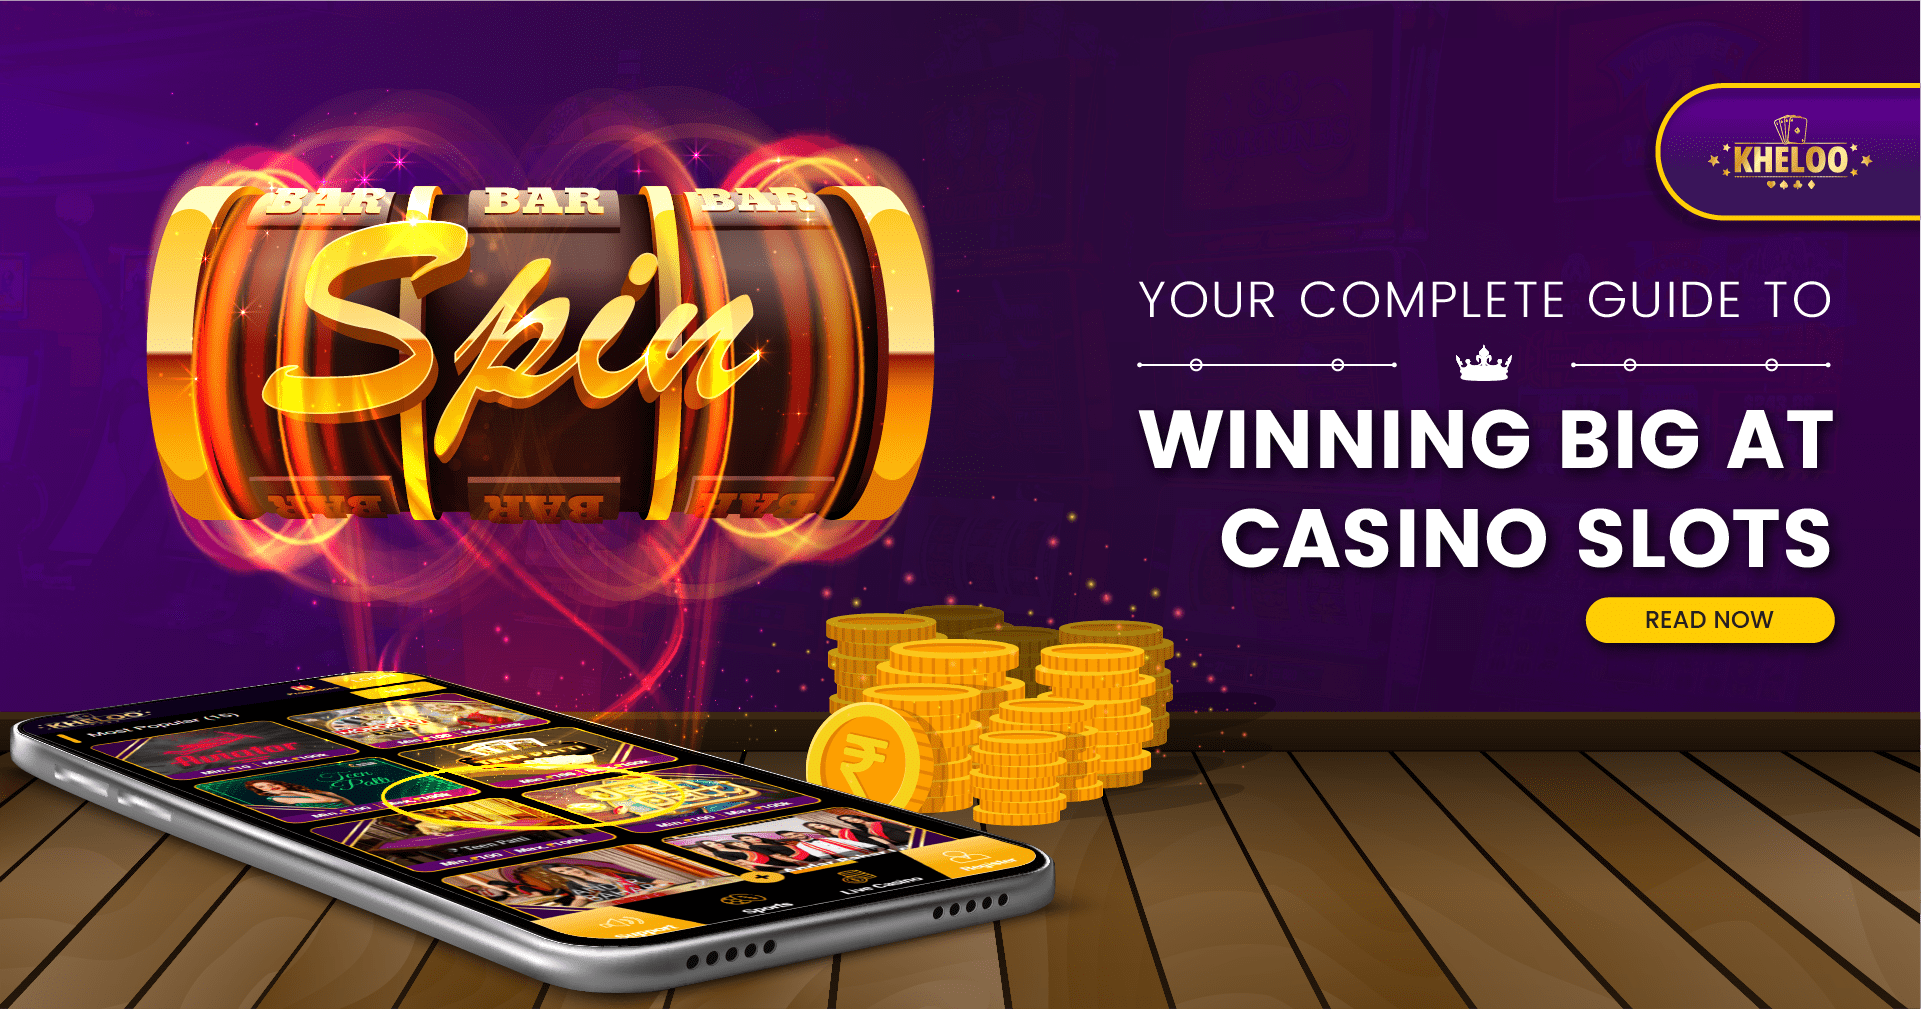 Free Casino Games Slot Machine: How to Win Big Casino Tips